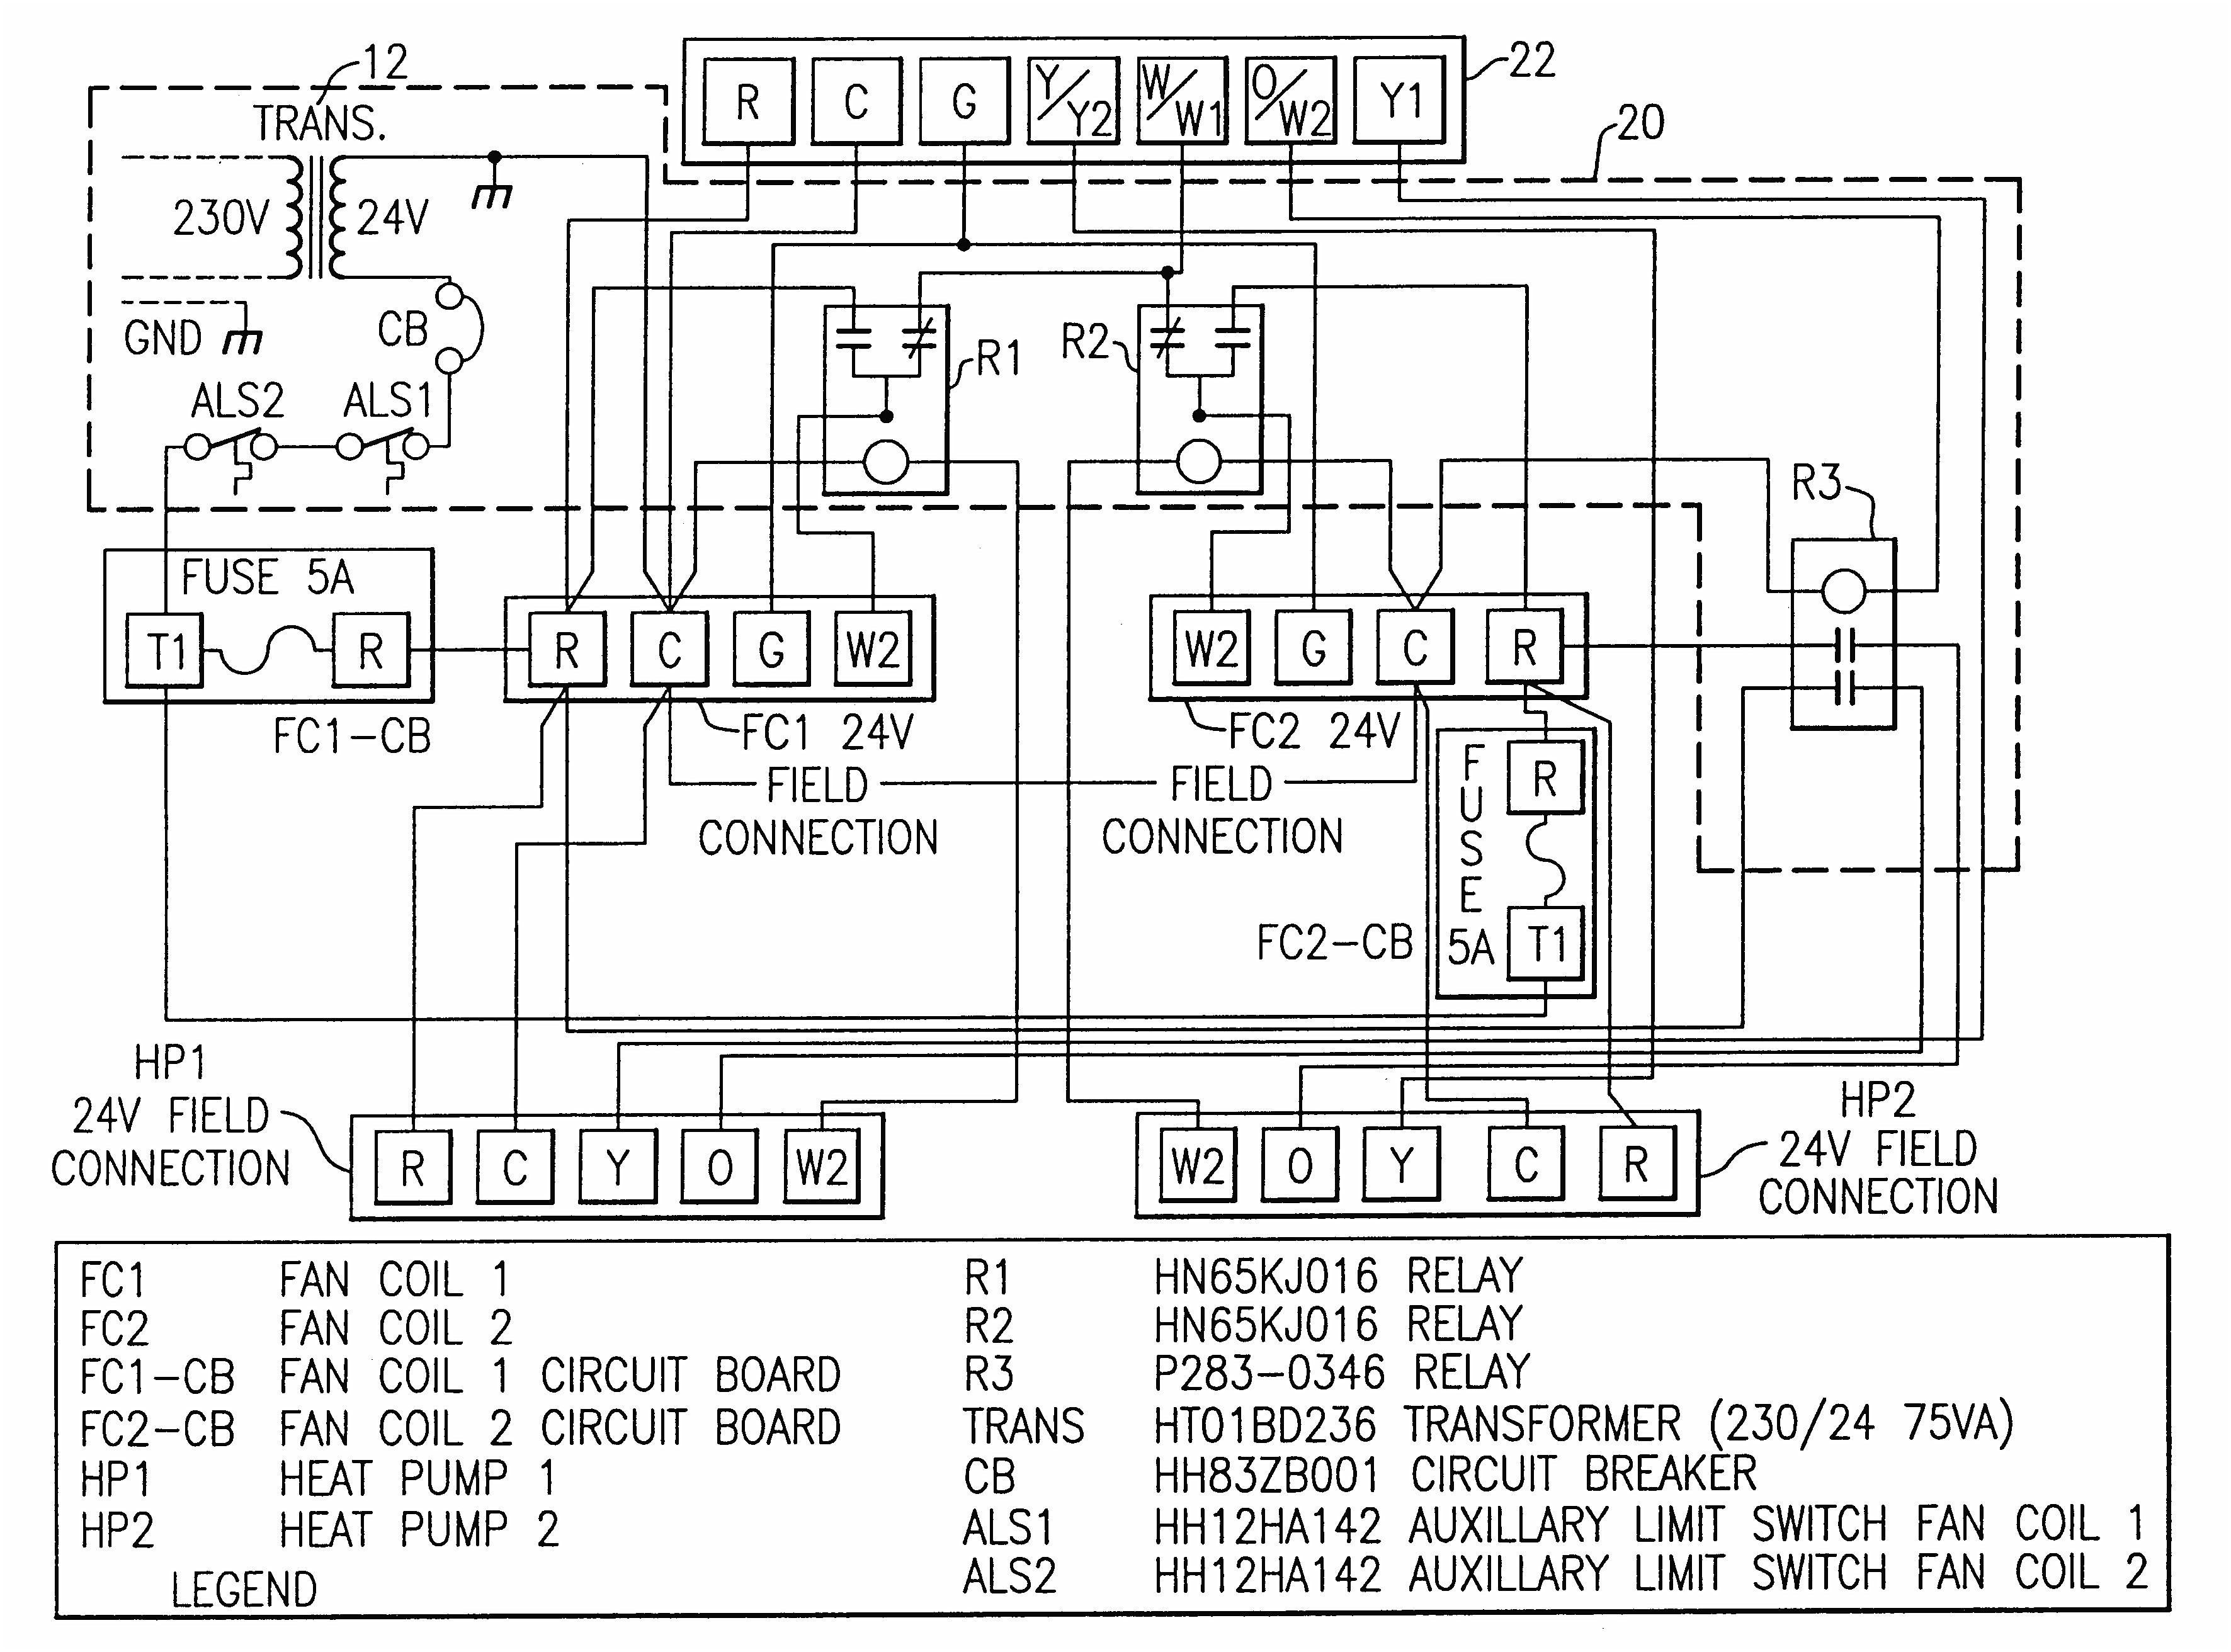 spurce old carrier wiring diagrams heat pump water wiring diagramspurce old carrier wiring diagrams heat pump